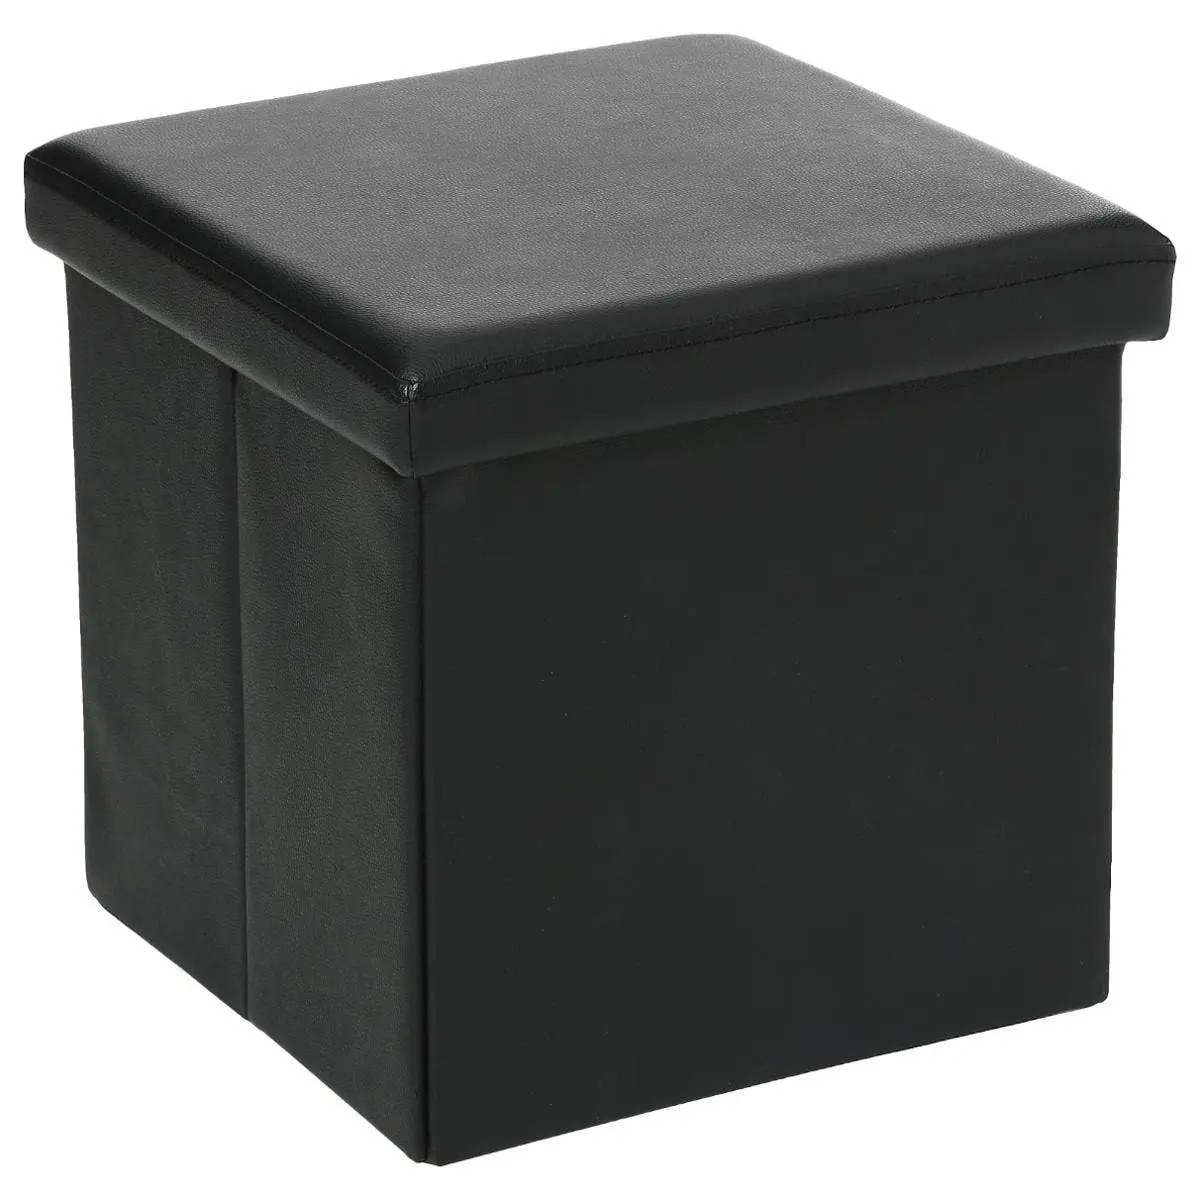 Poef hocker opbergbox zwart polyester-mdf 38 x 38 cm opvouwbaar